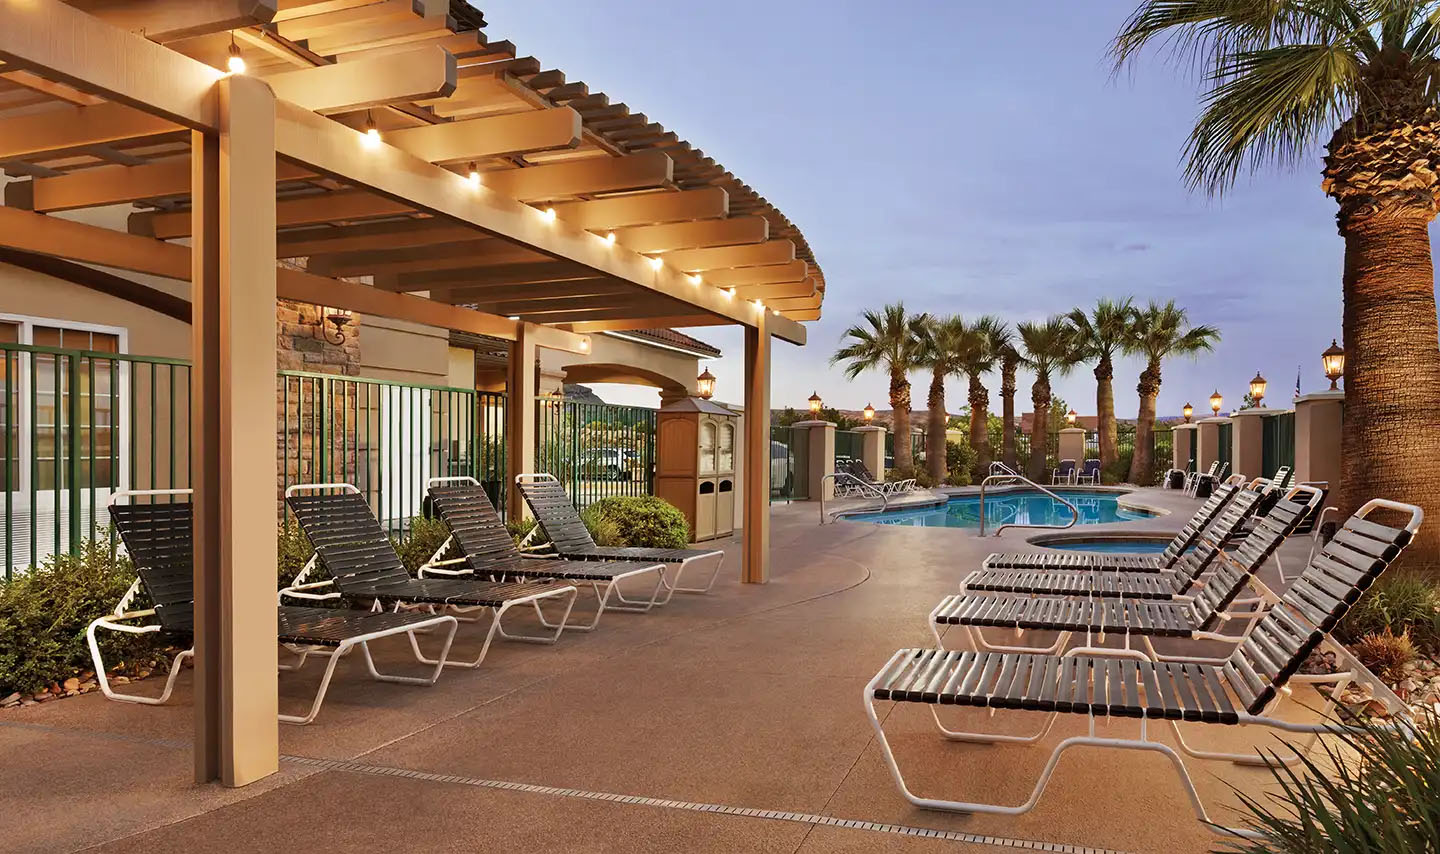 La Quinta Inn & Suites St. George pool